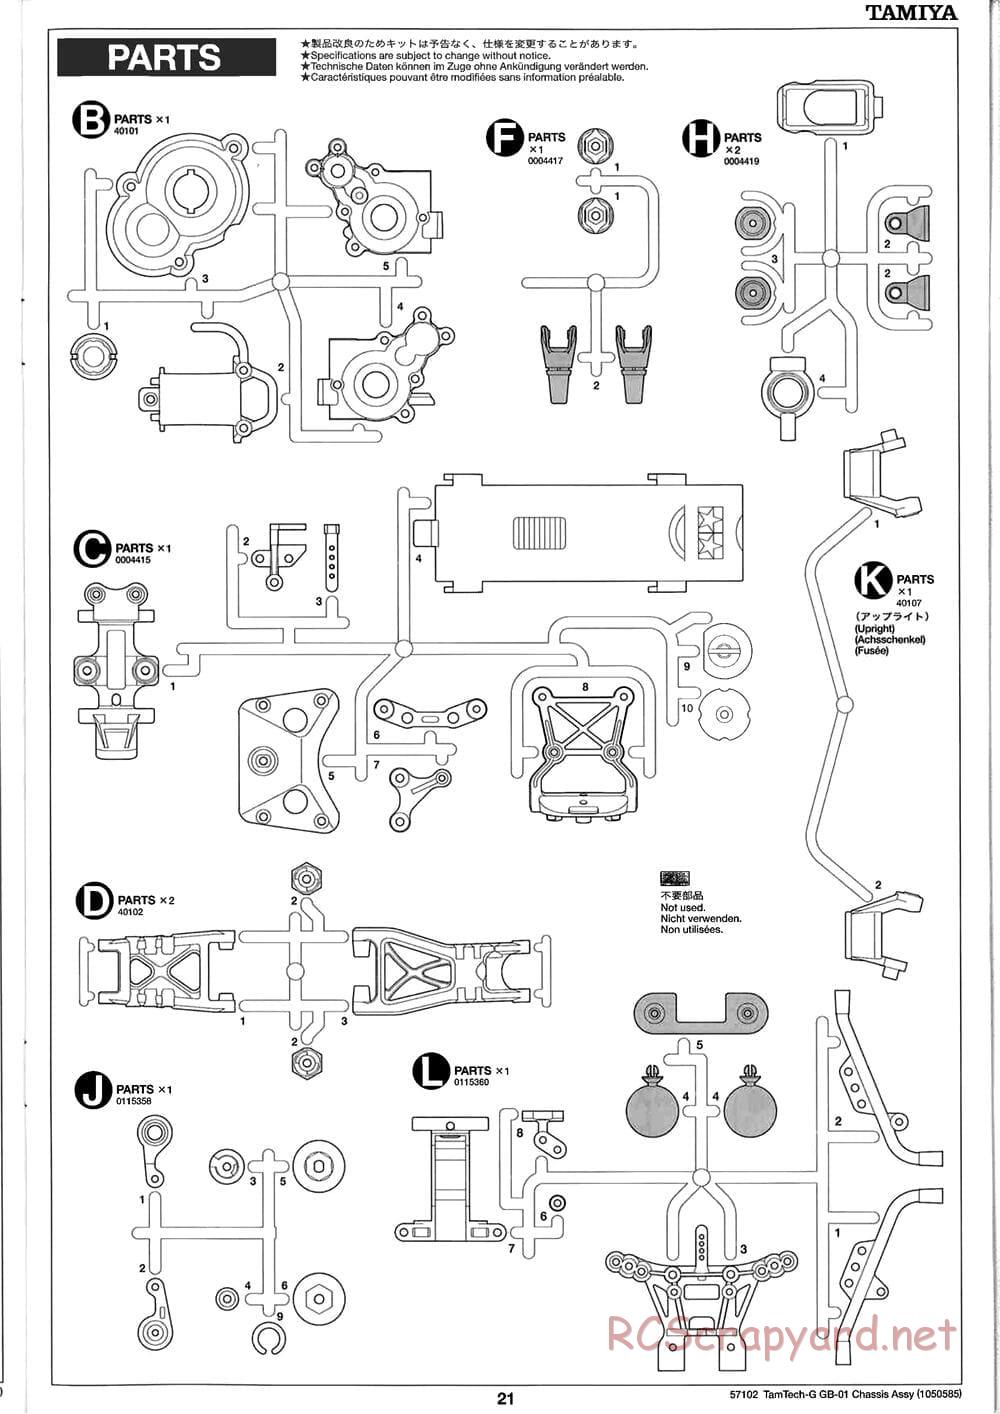 Tamiya - GB-01 Chassis - Manual - Page 21